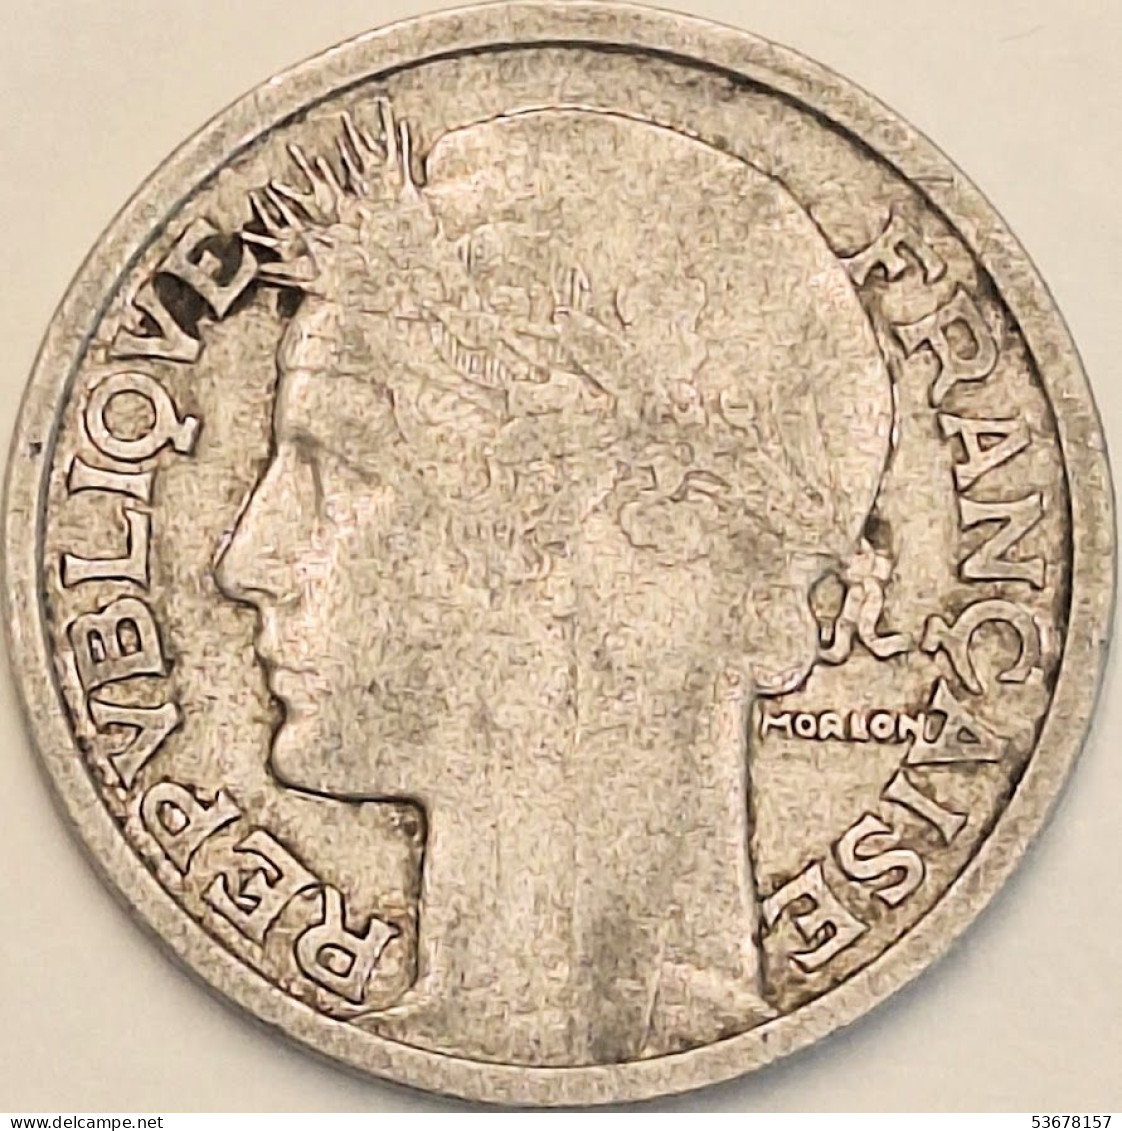 France - 2 Francs 1950, KM# 886a.1 (#4111) - 2 Francs